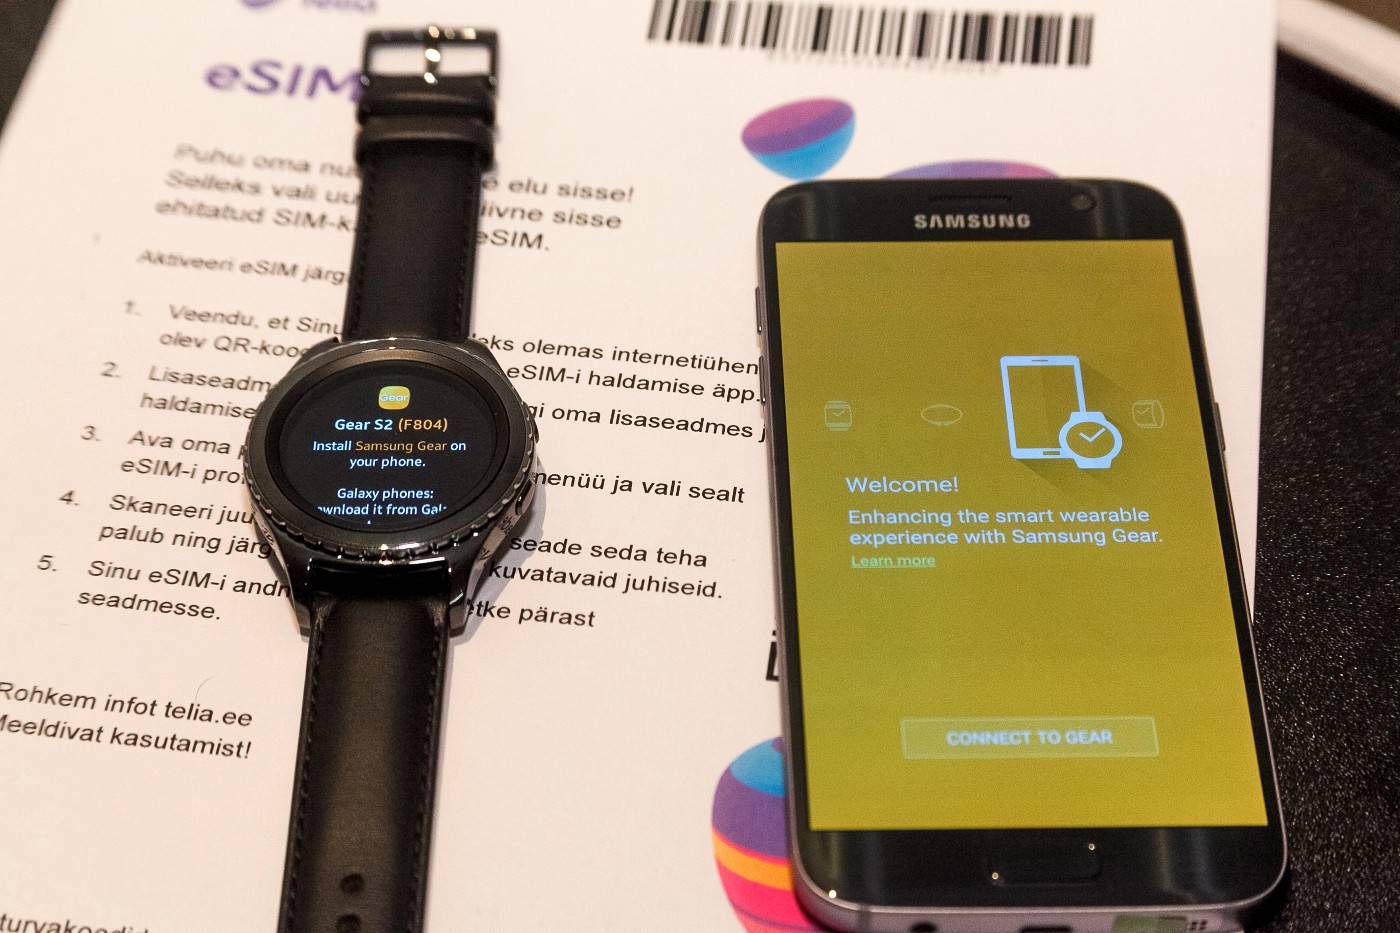 Samsung Galaxy Watch 4 E Sim